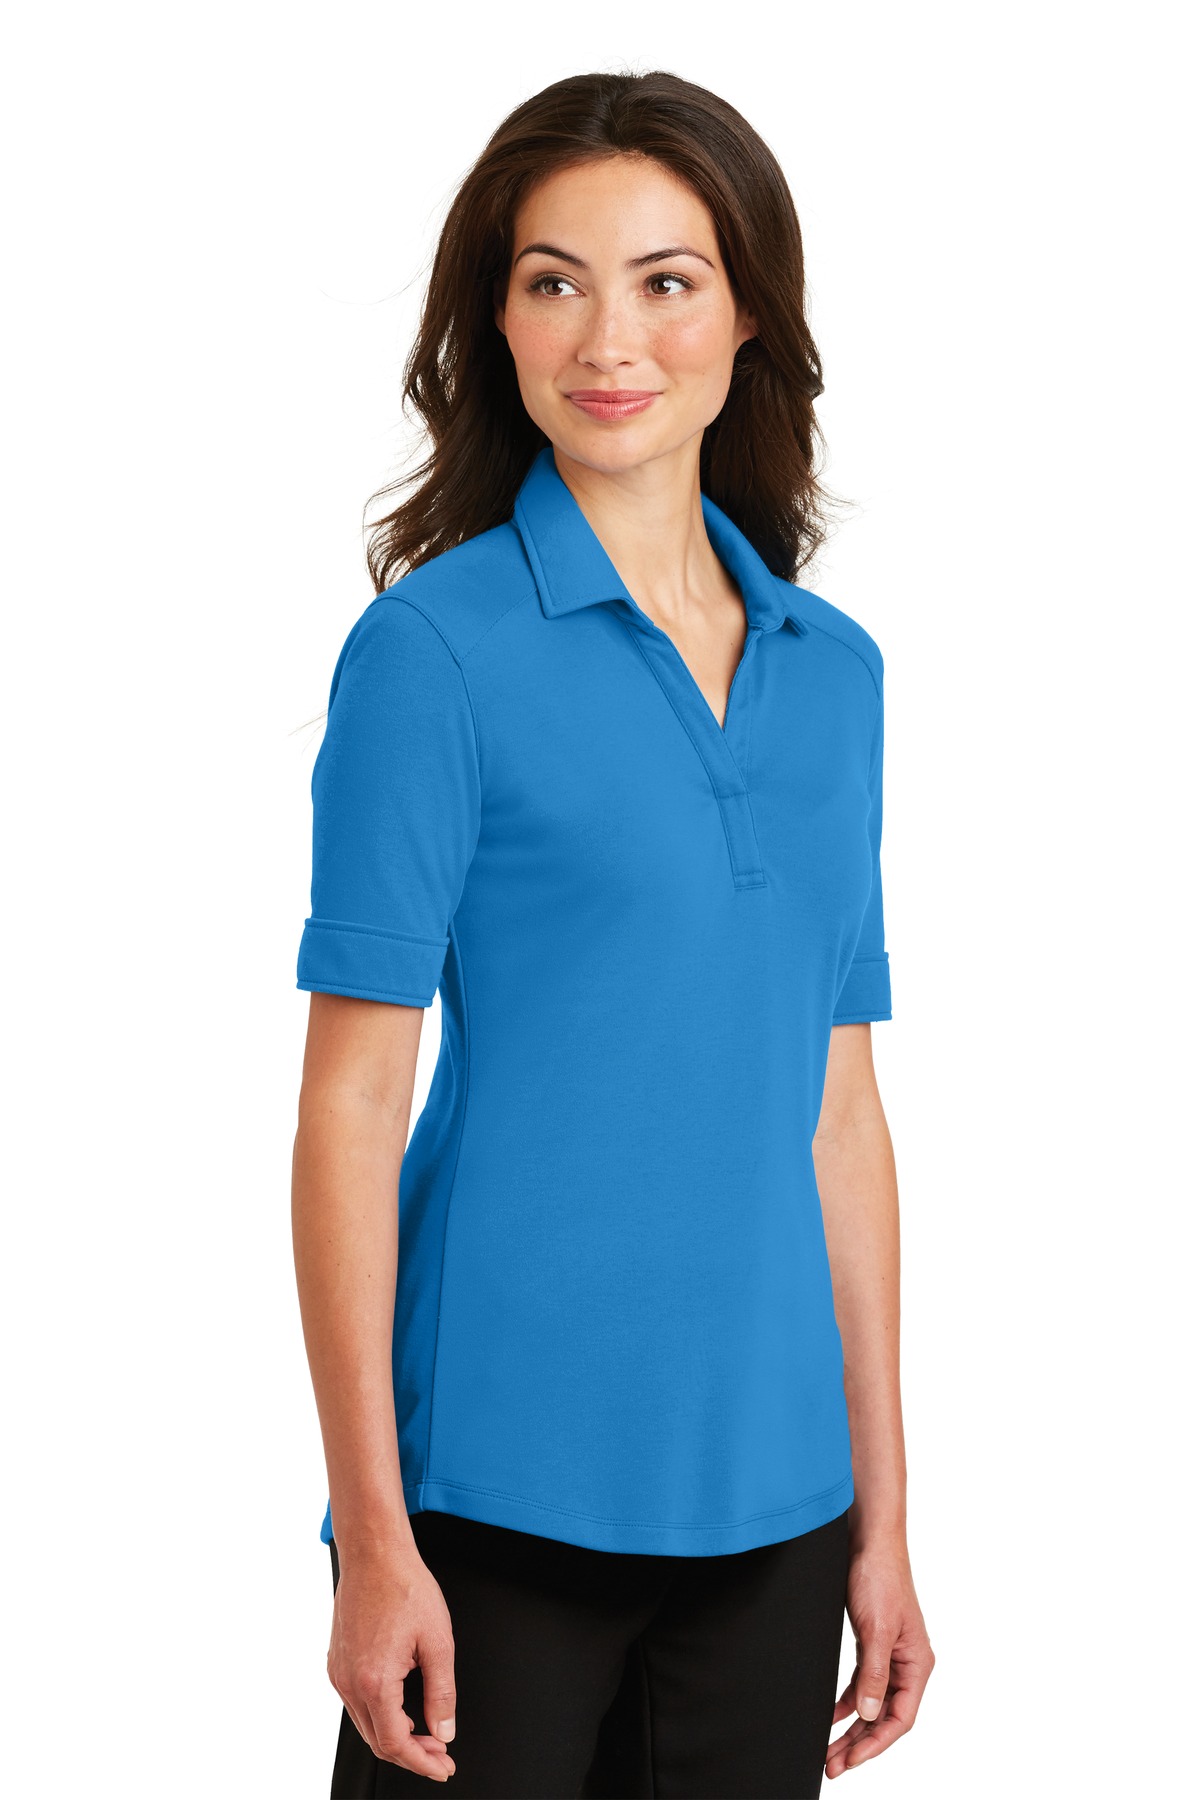 Port Authority Adult Female Women Plain Short Sleeves Polo Brilliant Blue Large - image 4 of 6